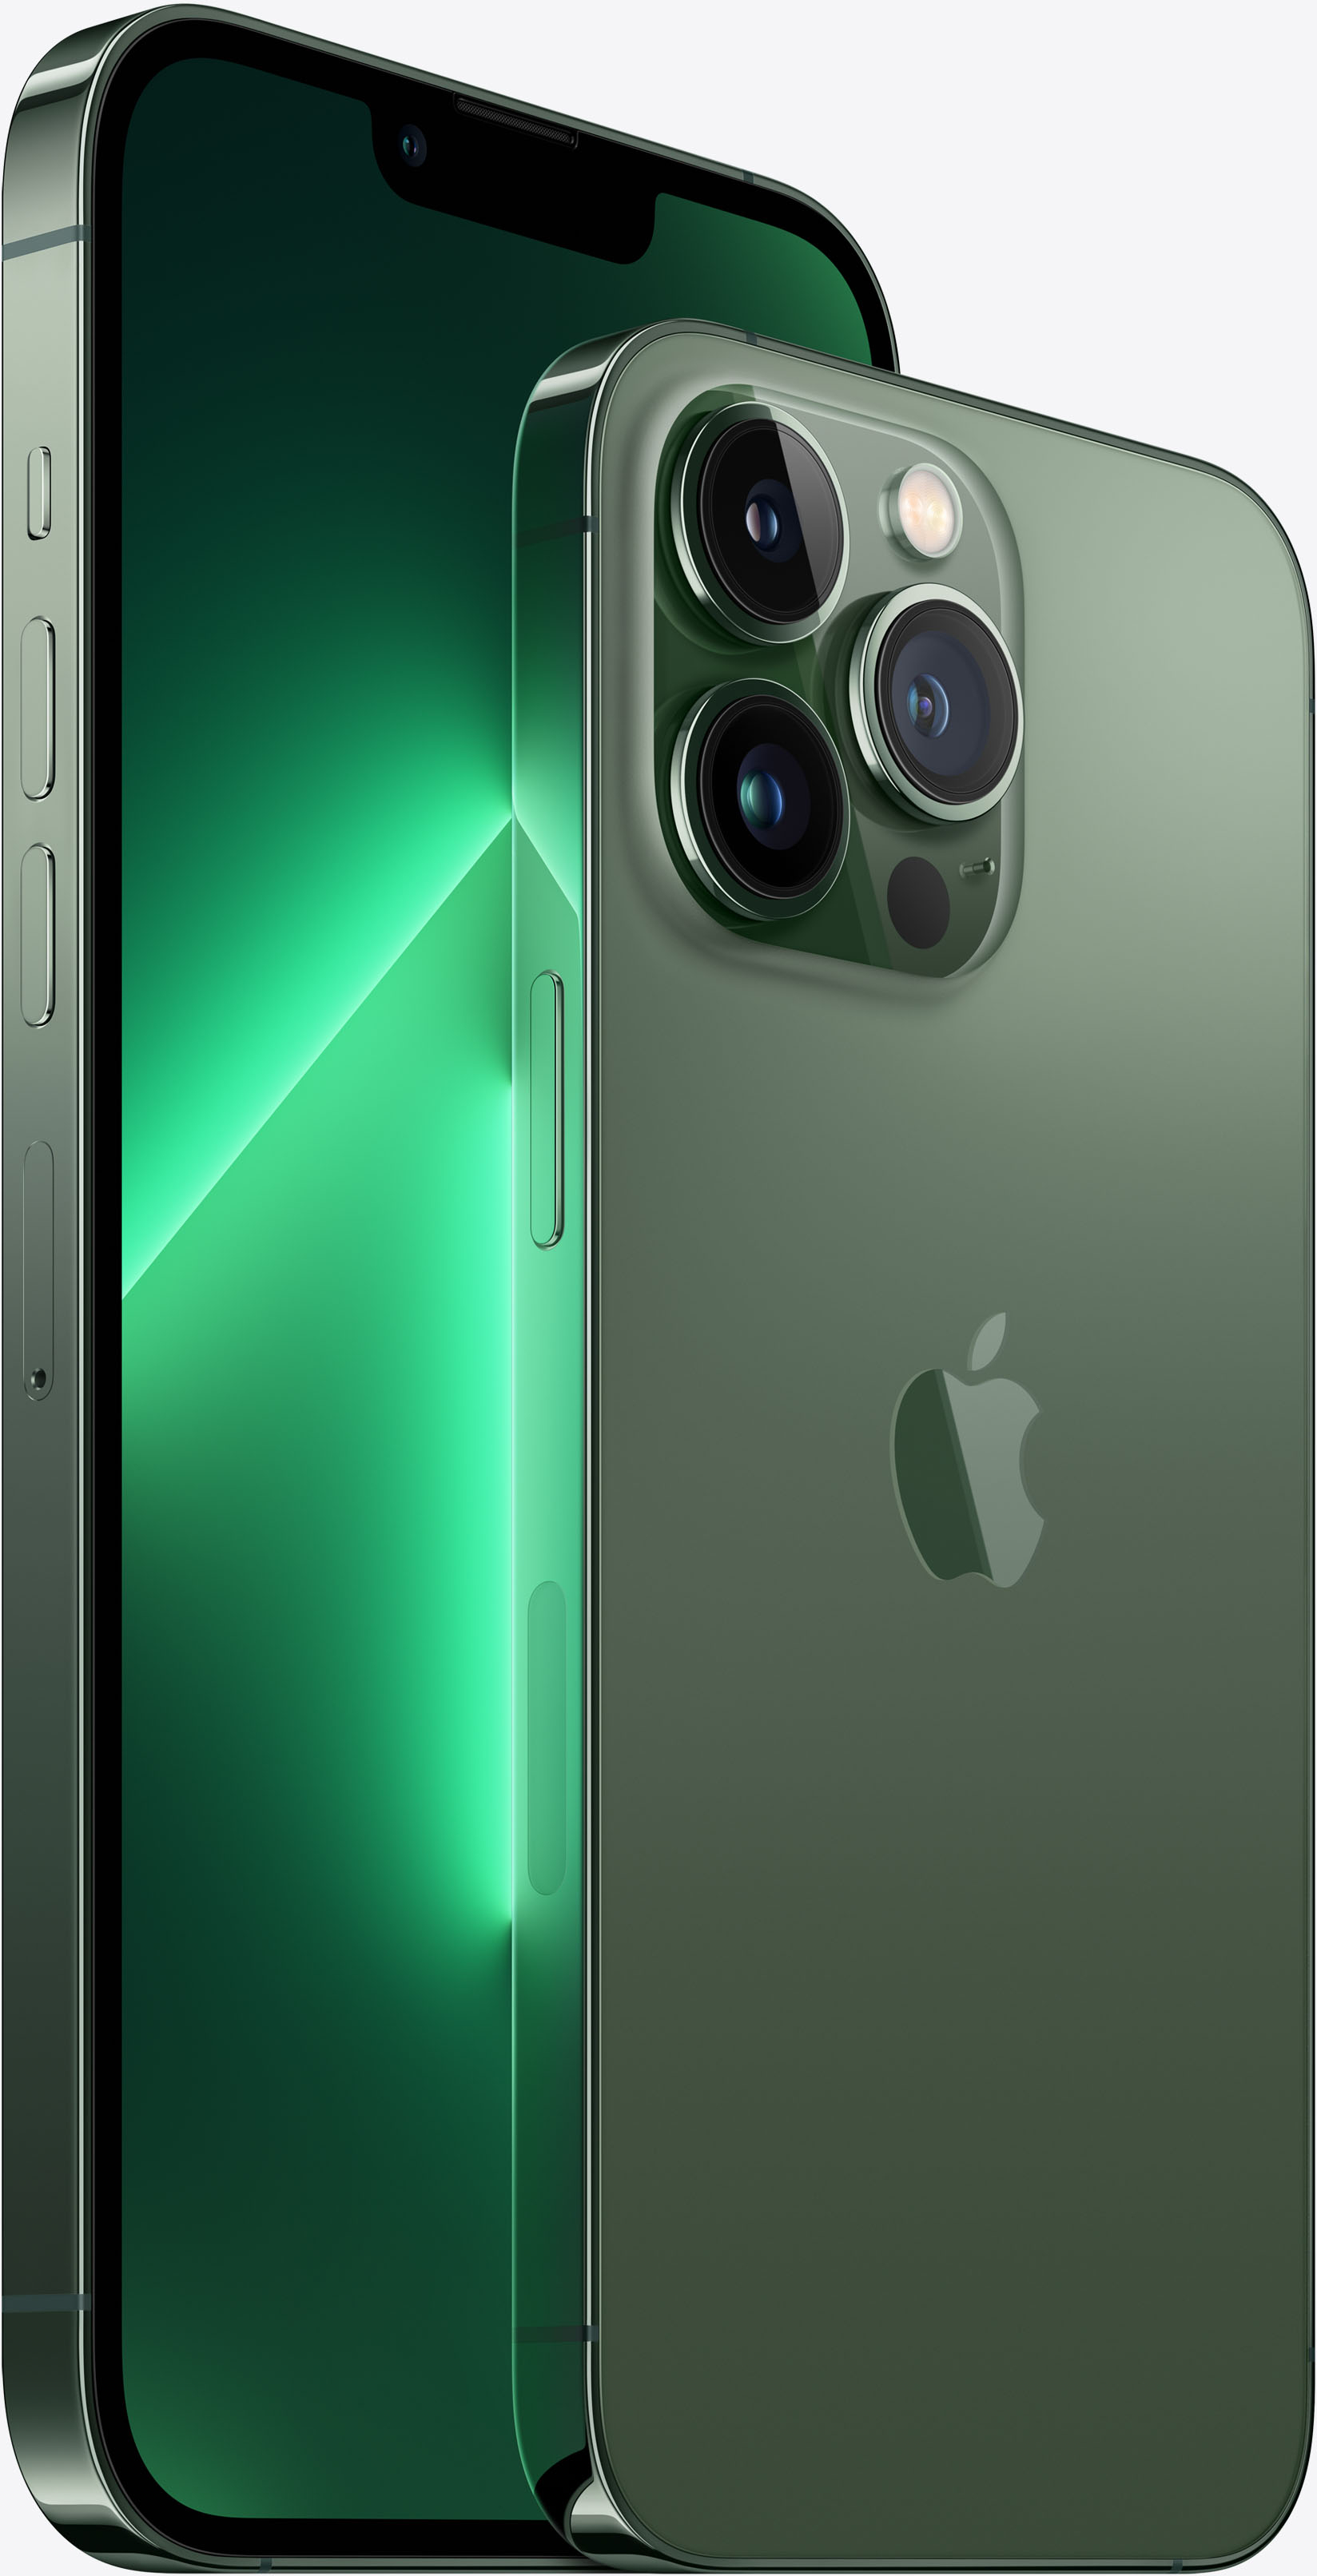 Así son los nuevos iPhone 13 Green y Alpine Green - Digital Trends